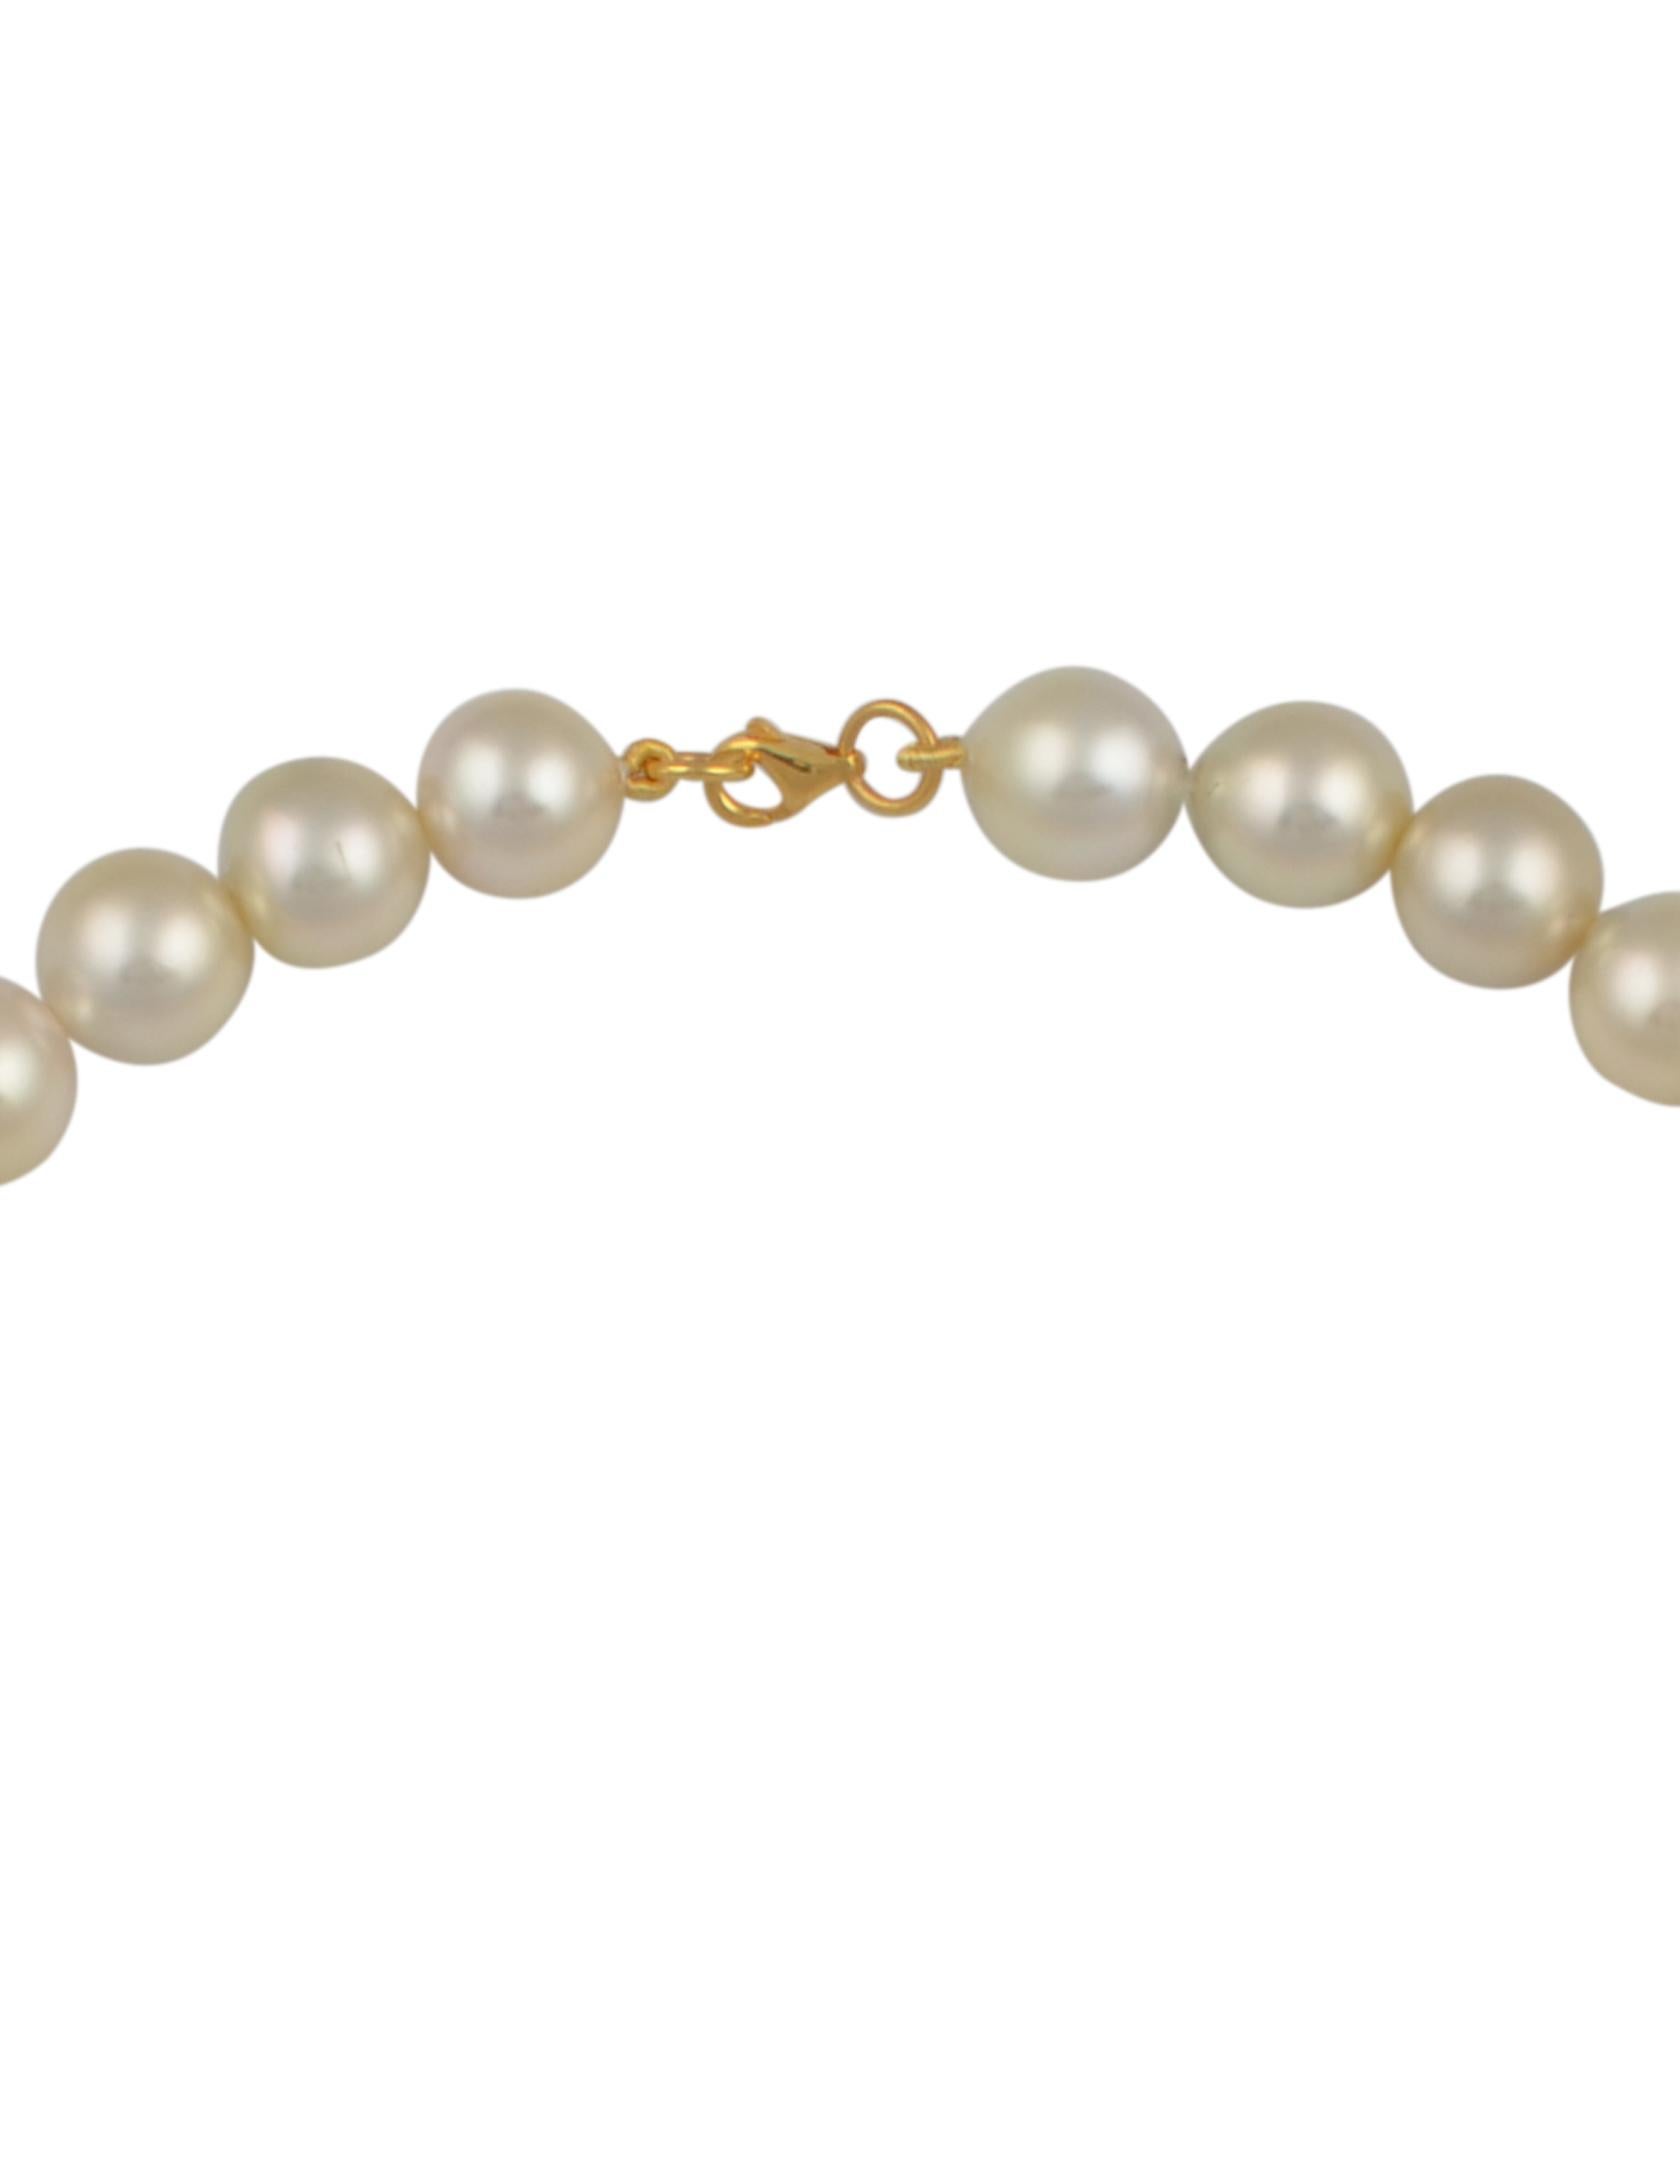 cream color pearls